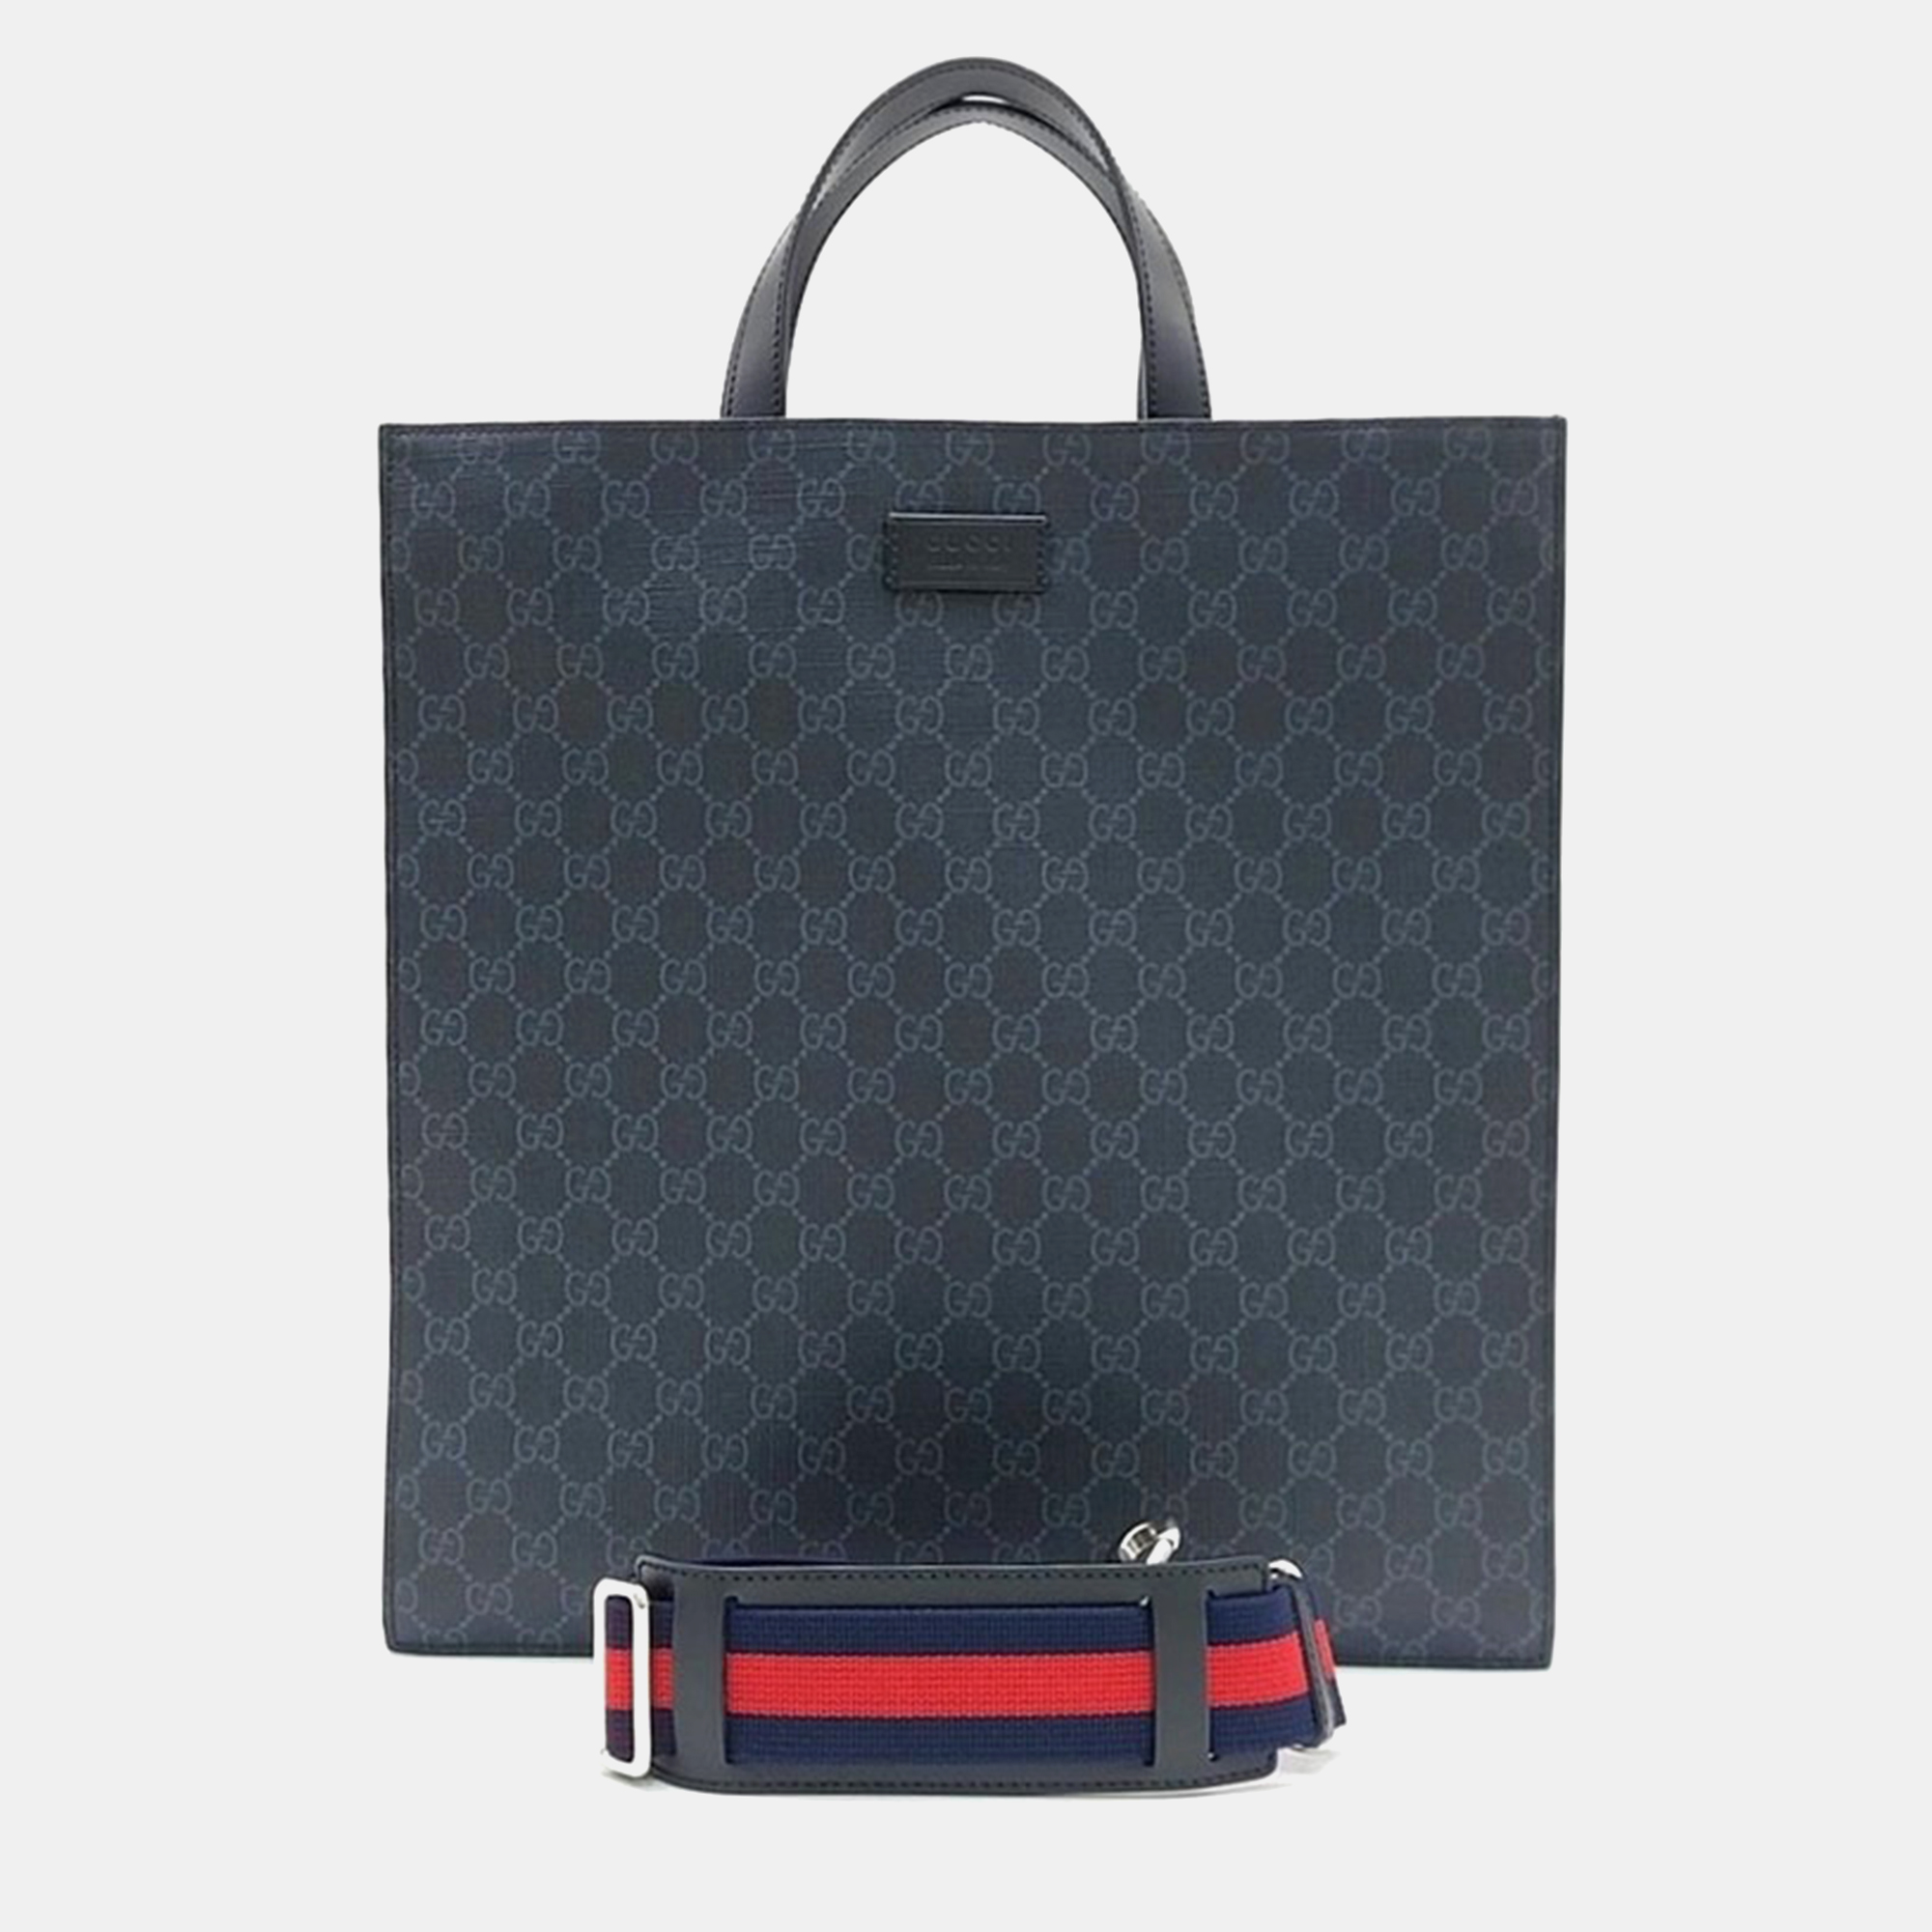 

Gucci Soft GG Supreme Tote Bag, Black